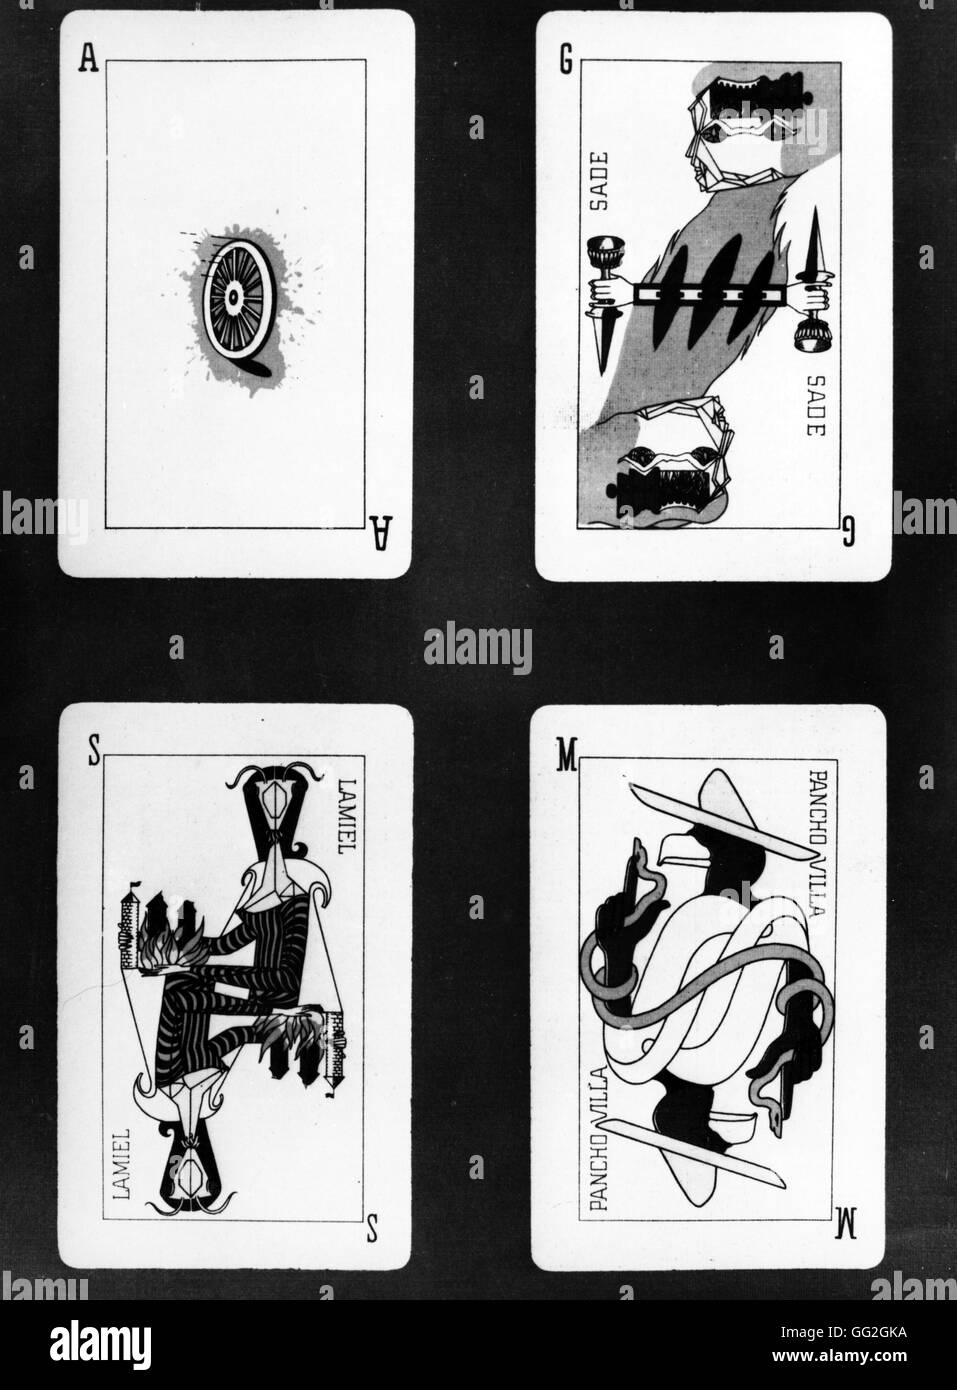 Jeu de Marsella. Cuatro tarjetas surrealista inspirada en el juego de Tarot.  Fue creado por artistas del movimiento surrealista, como André Breton, Max  Ernst, Wifredo Lam, André Masson, etc. Las tarjetas representan: -